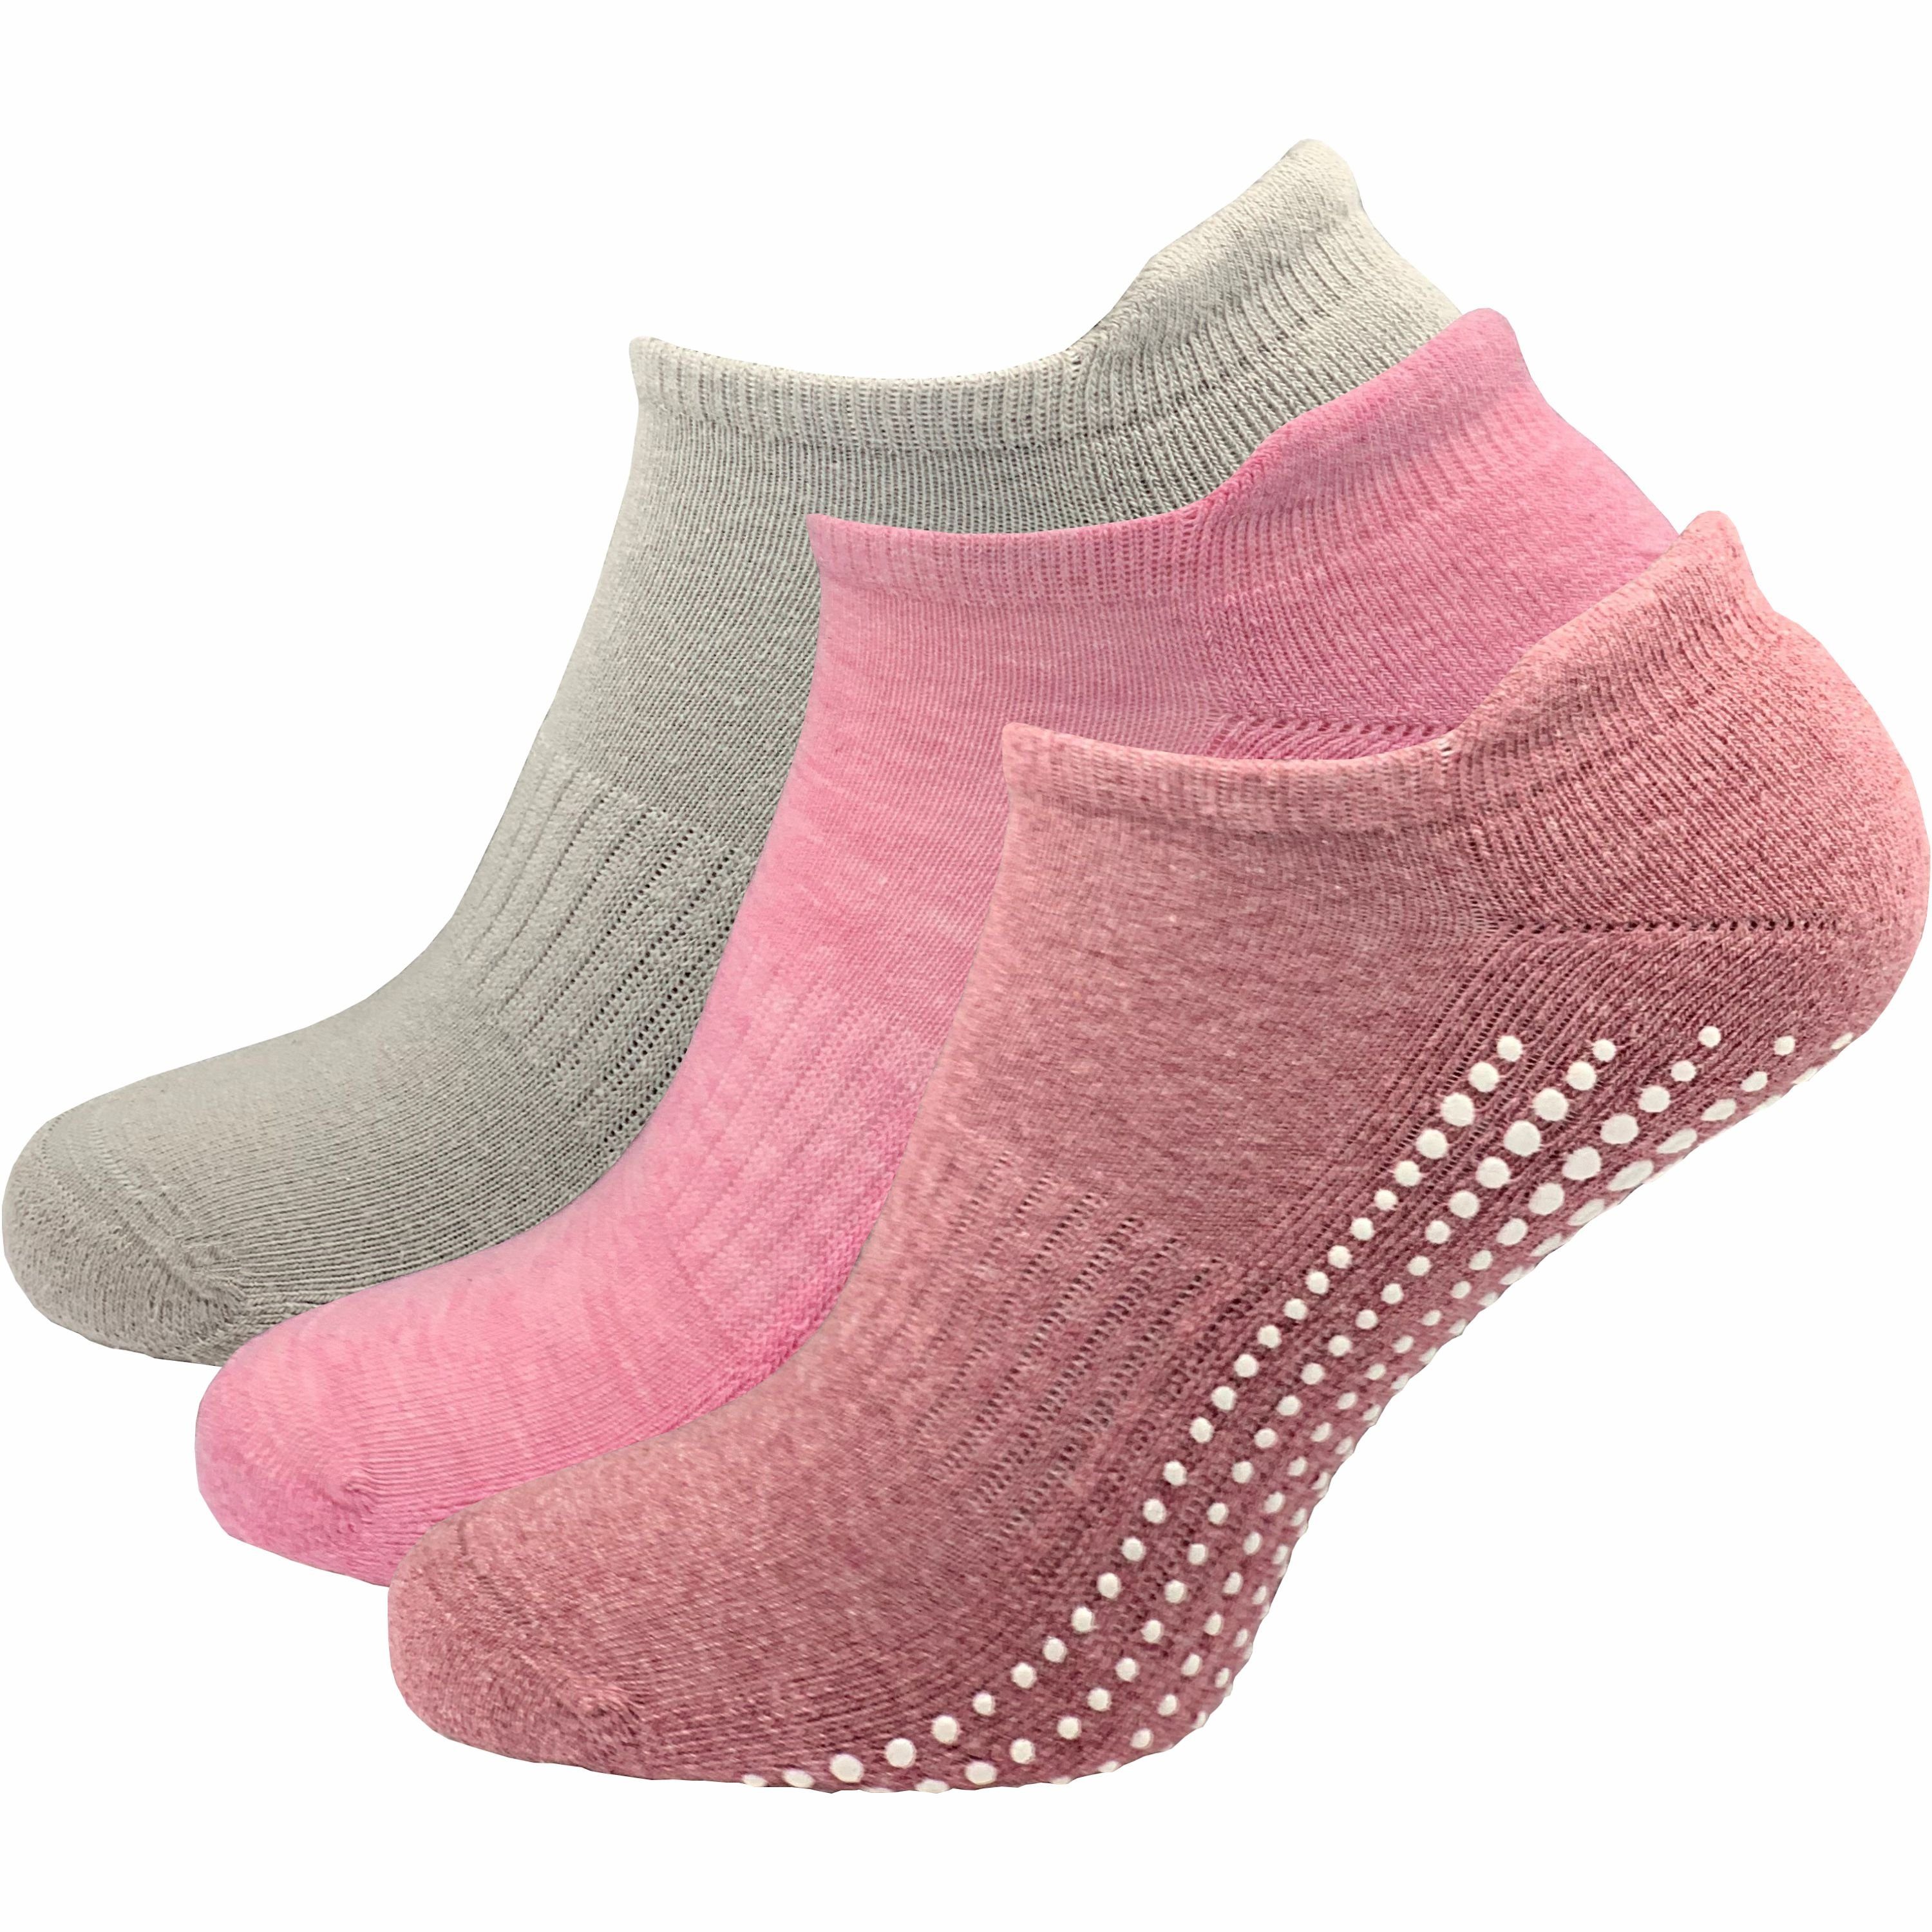 GAWILO ABS-Socken für Damen - Yoga & Pilates Шкарпетки - sicherer Halt auf glatten Böden (3 Paar) - rutschfest - mit hohem Baumwollanteil